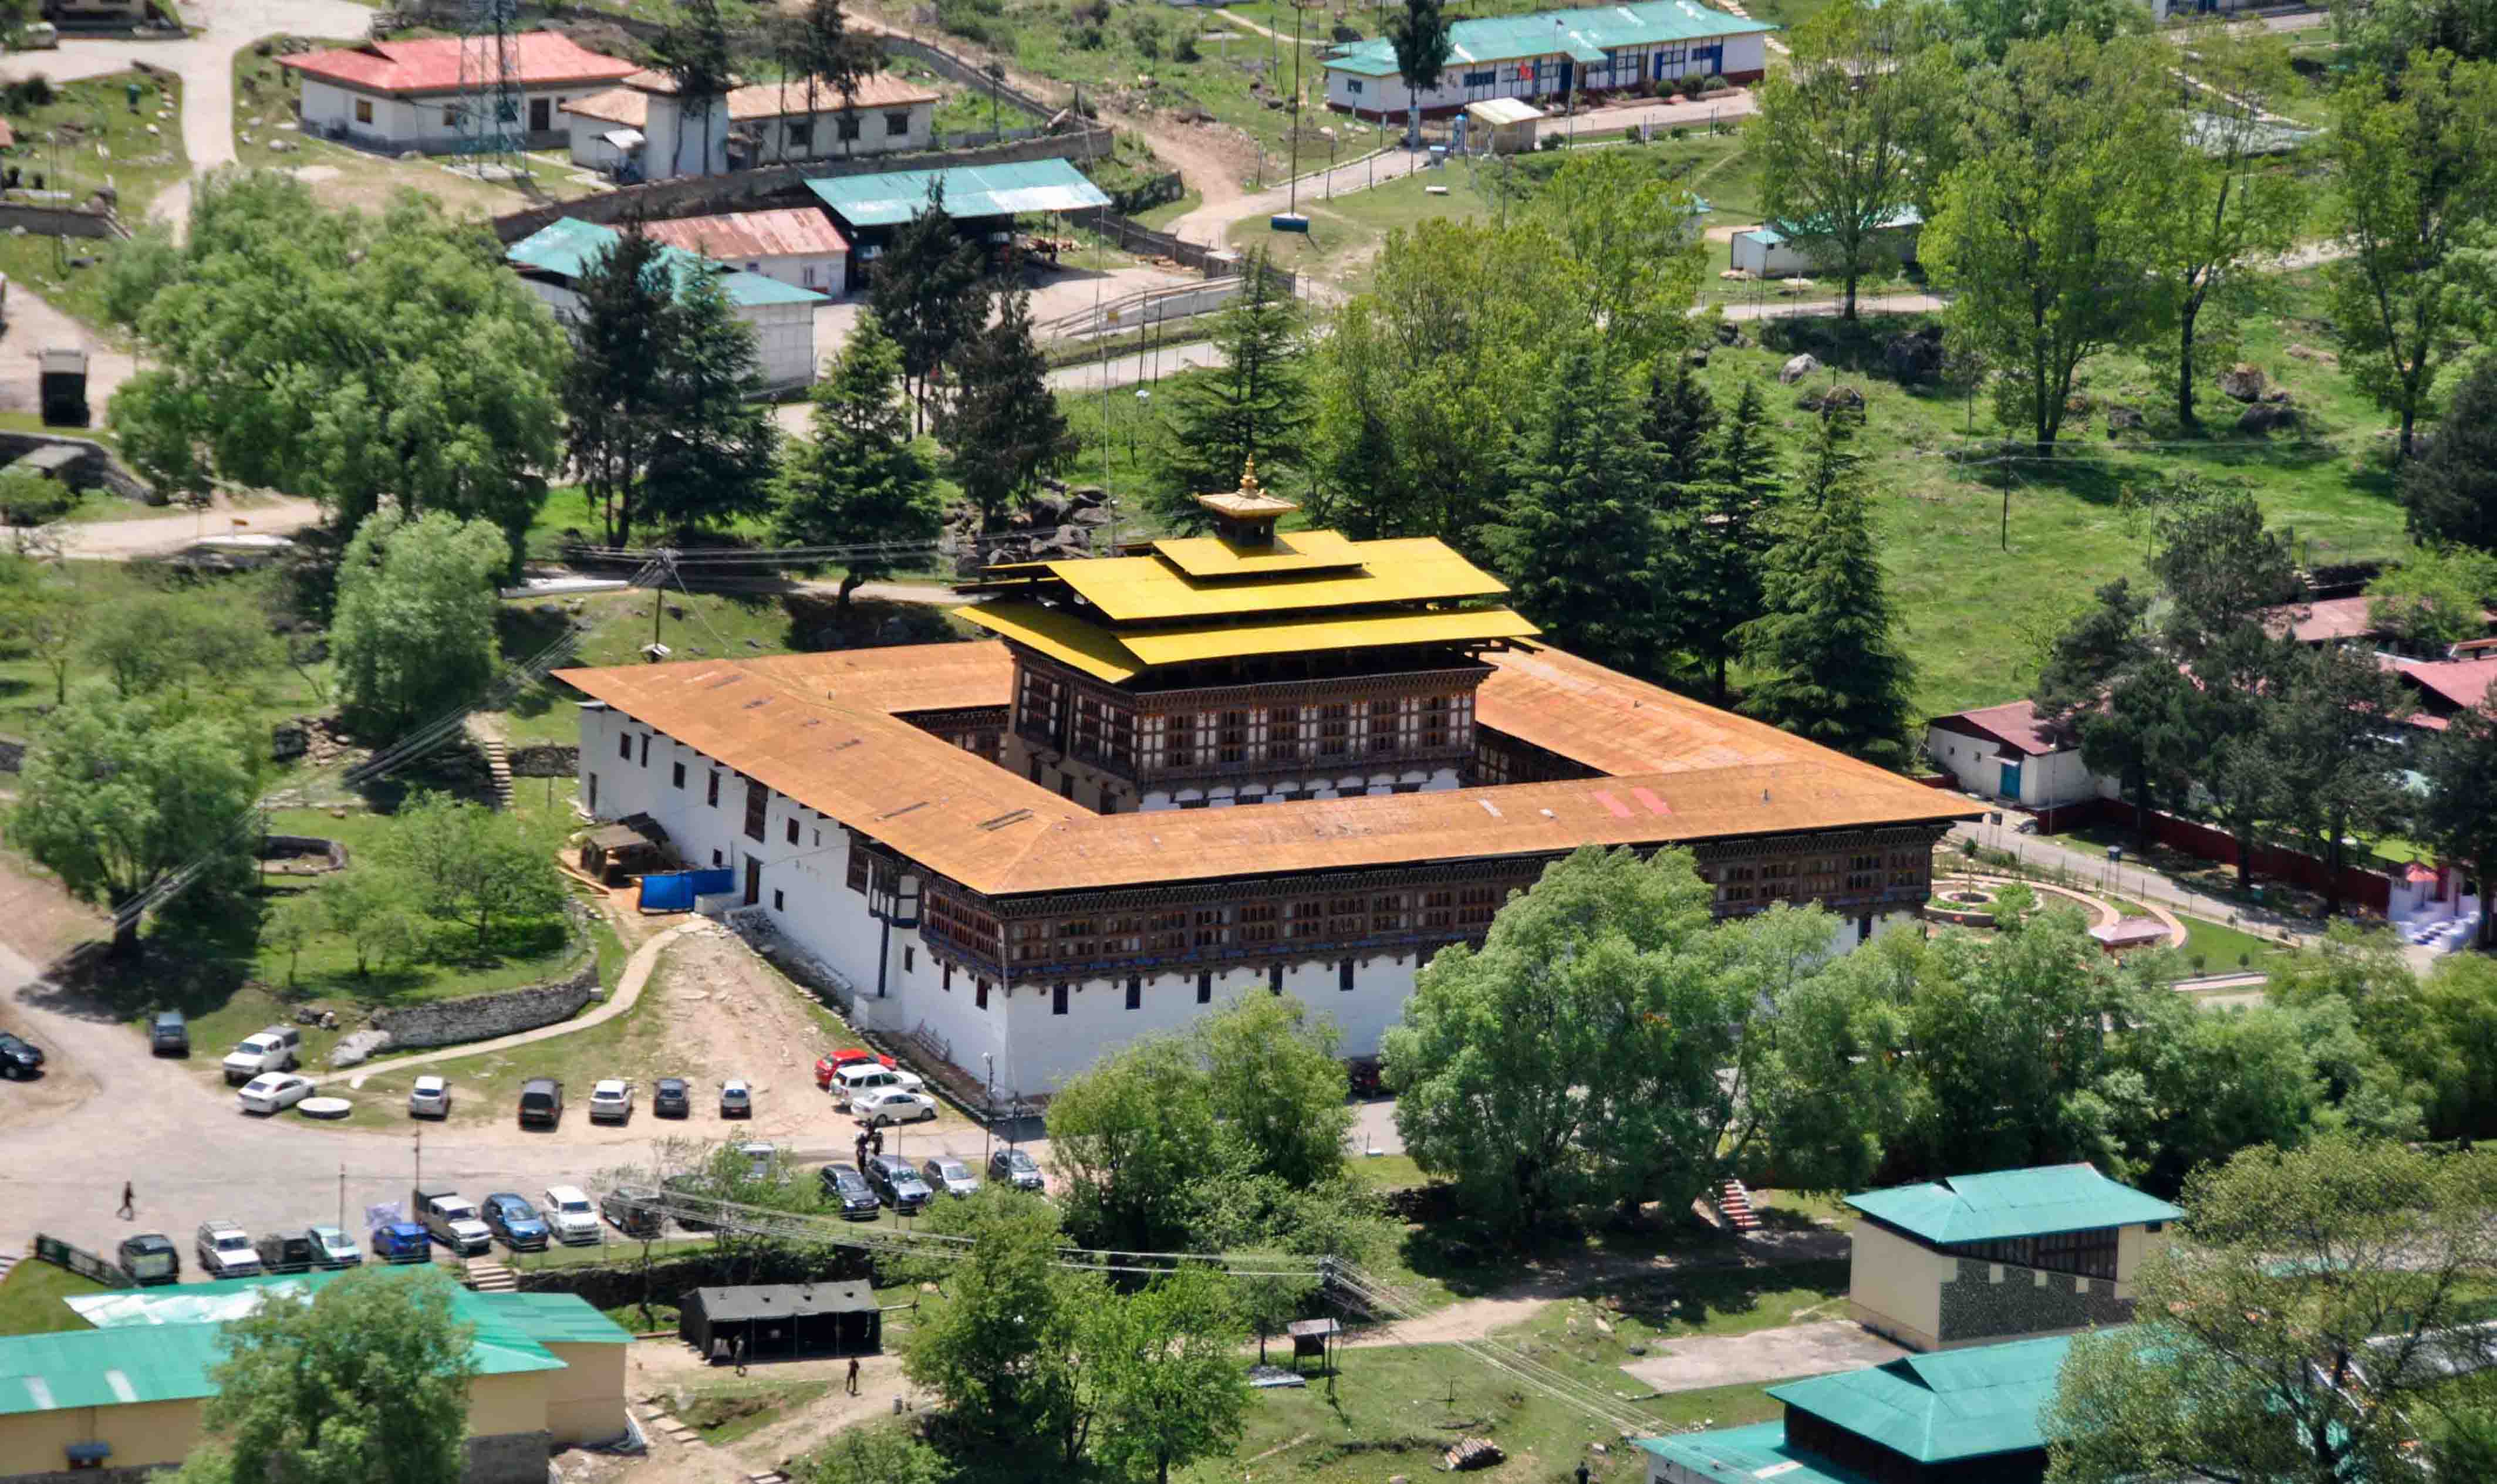 Haa Dzong